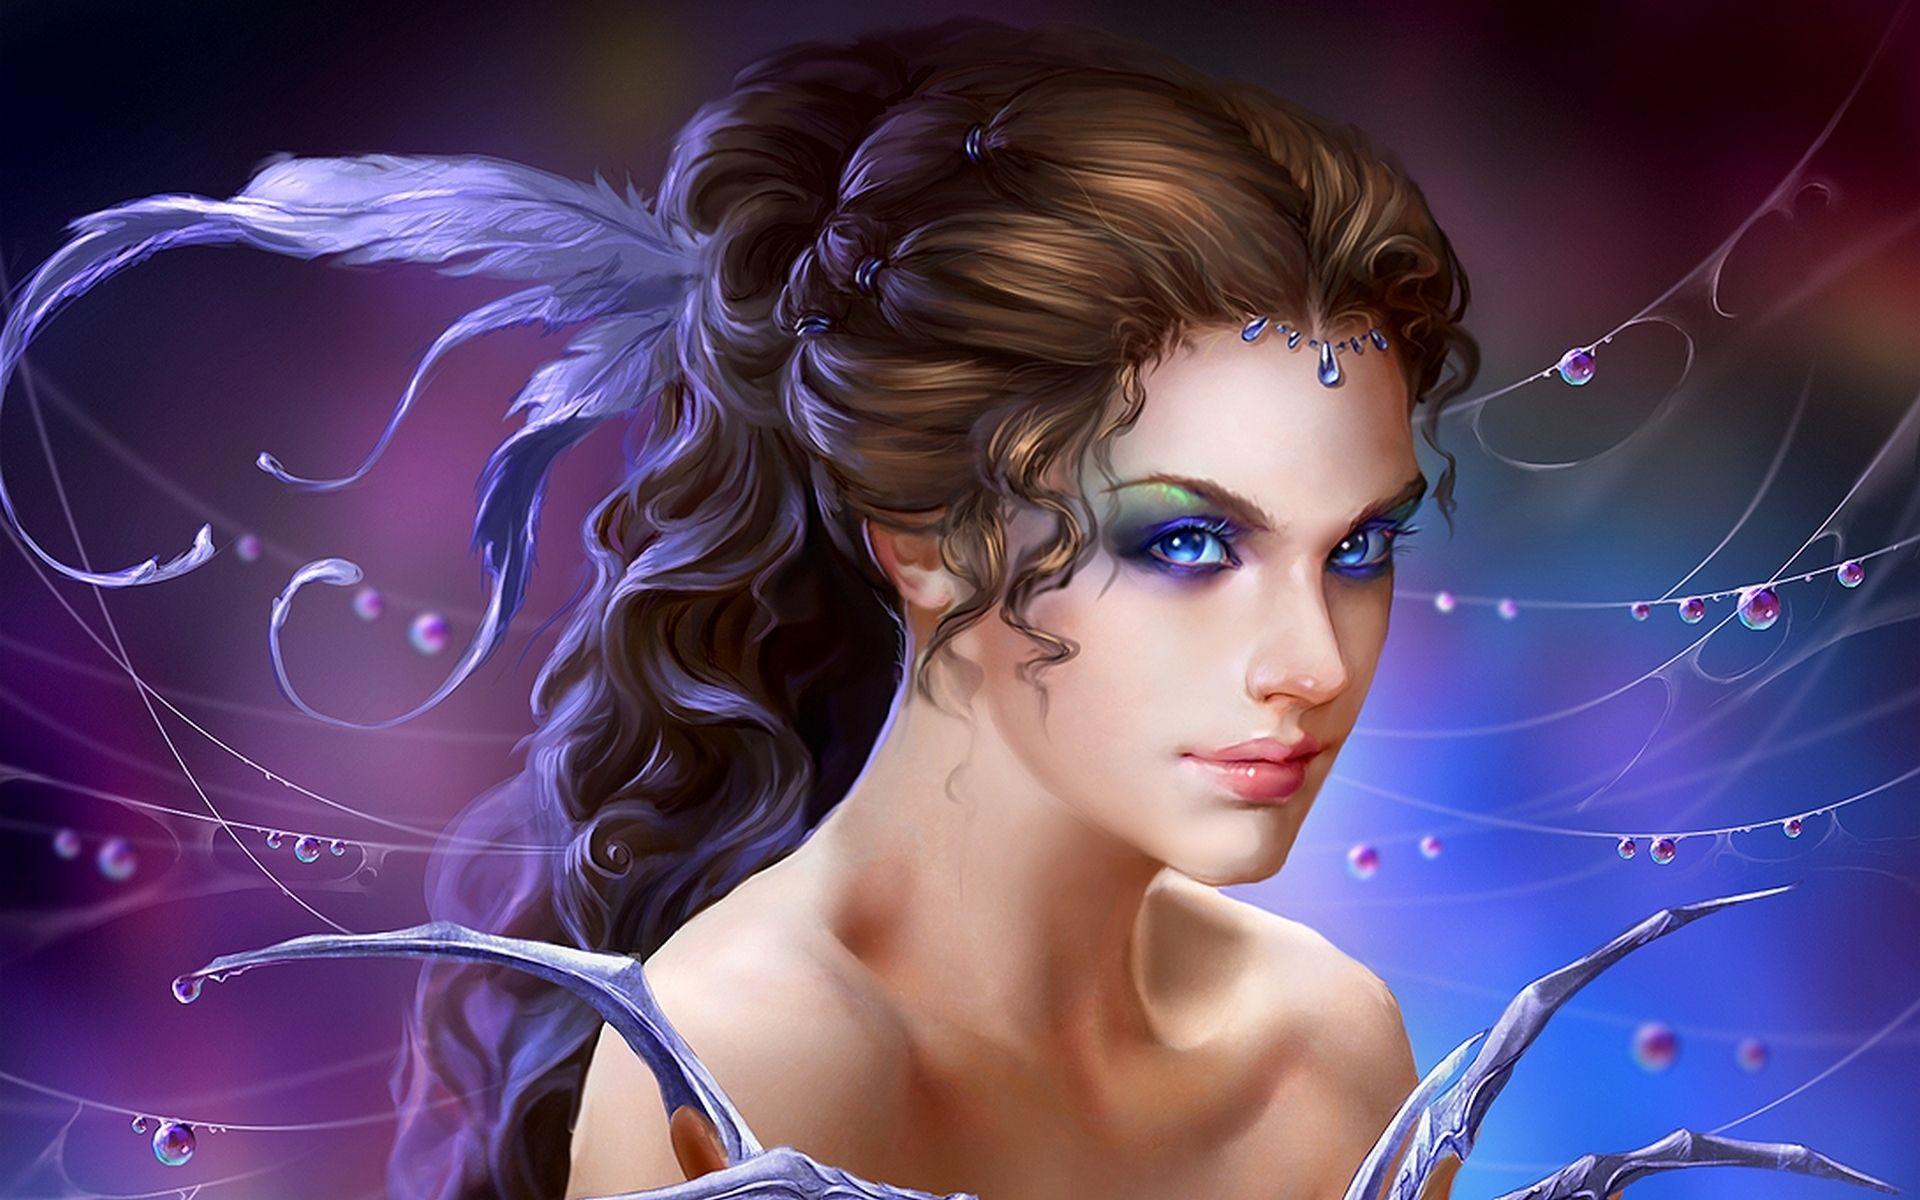 Download Cute Girl Fantasy Wallpaper. Full HD Wallpaper